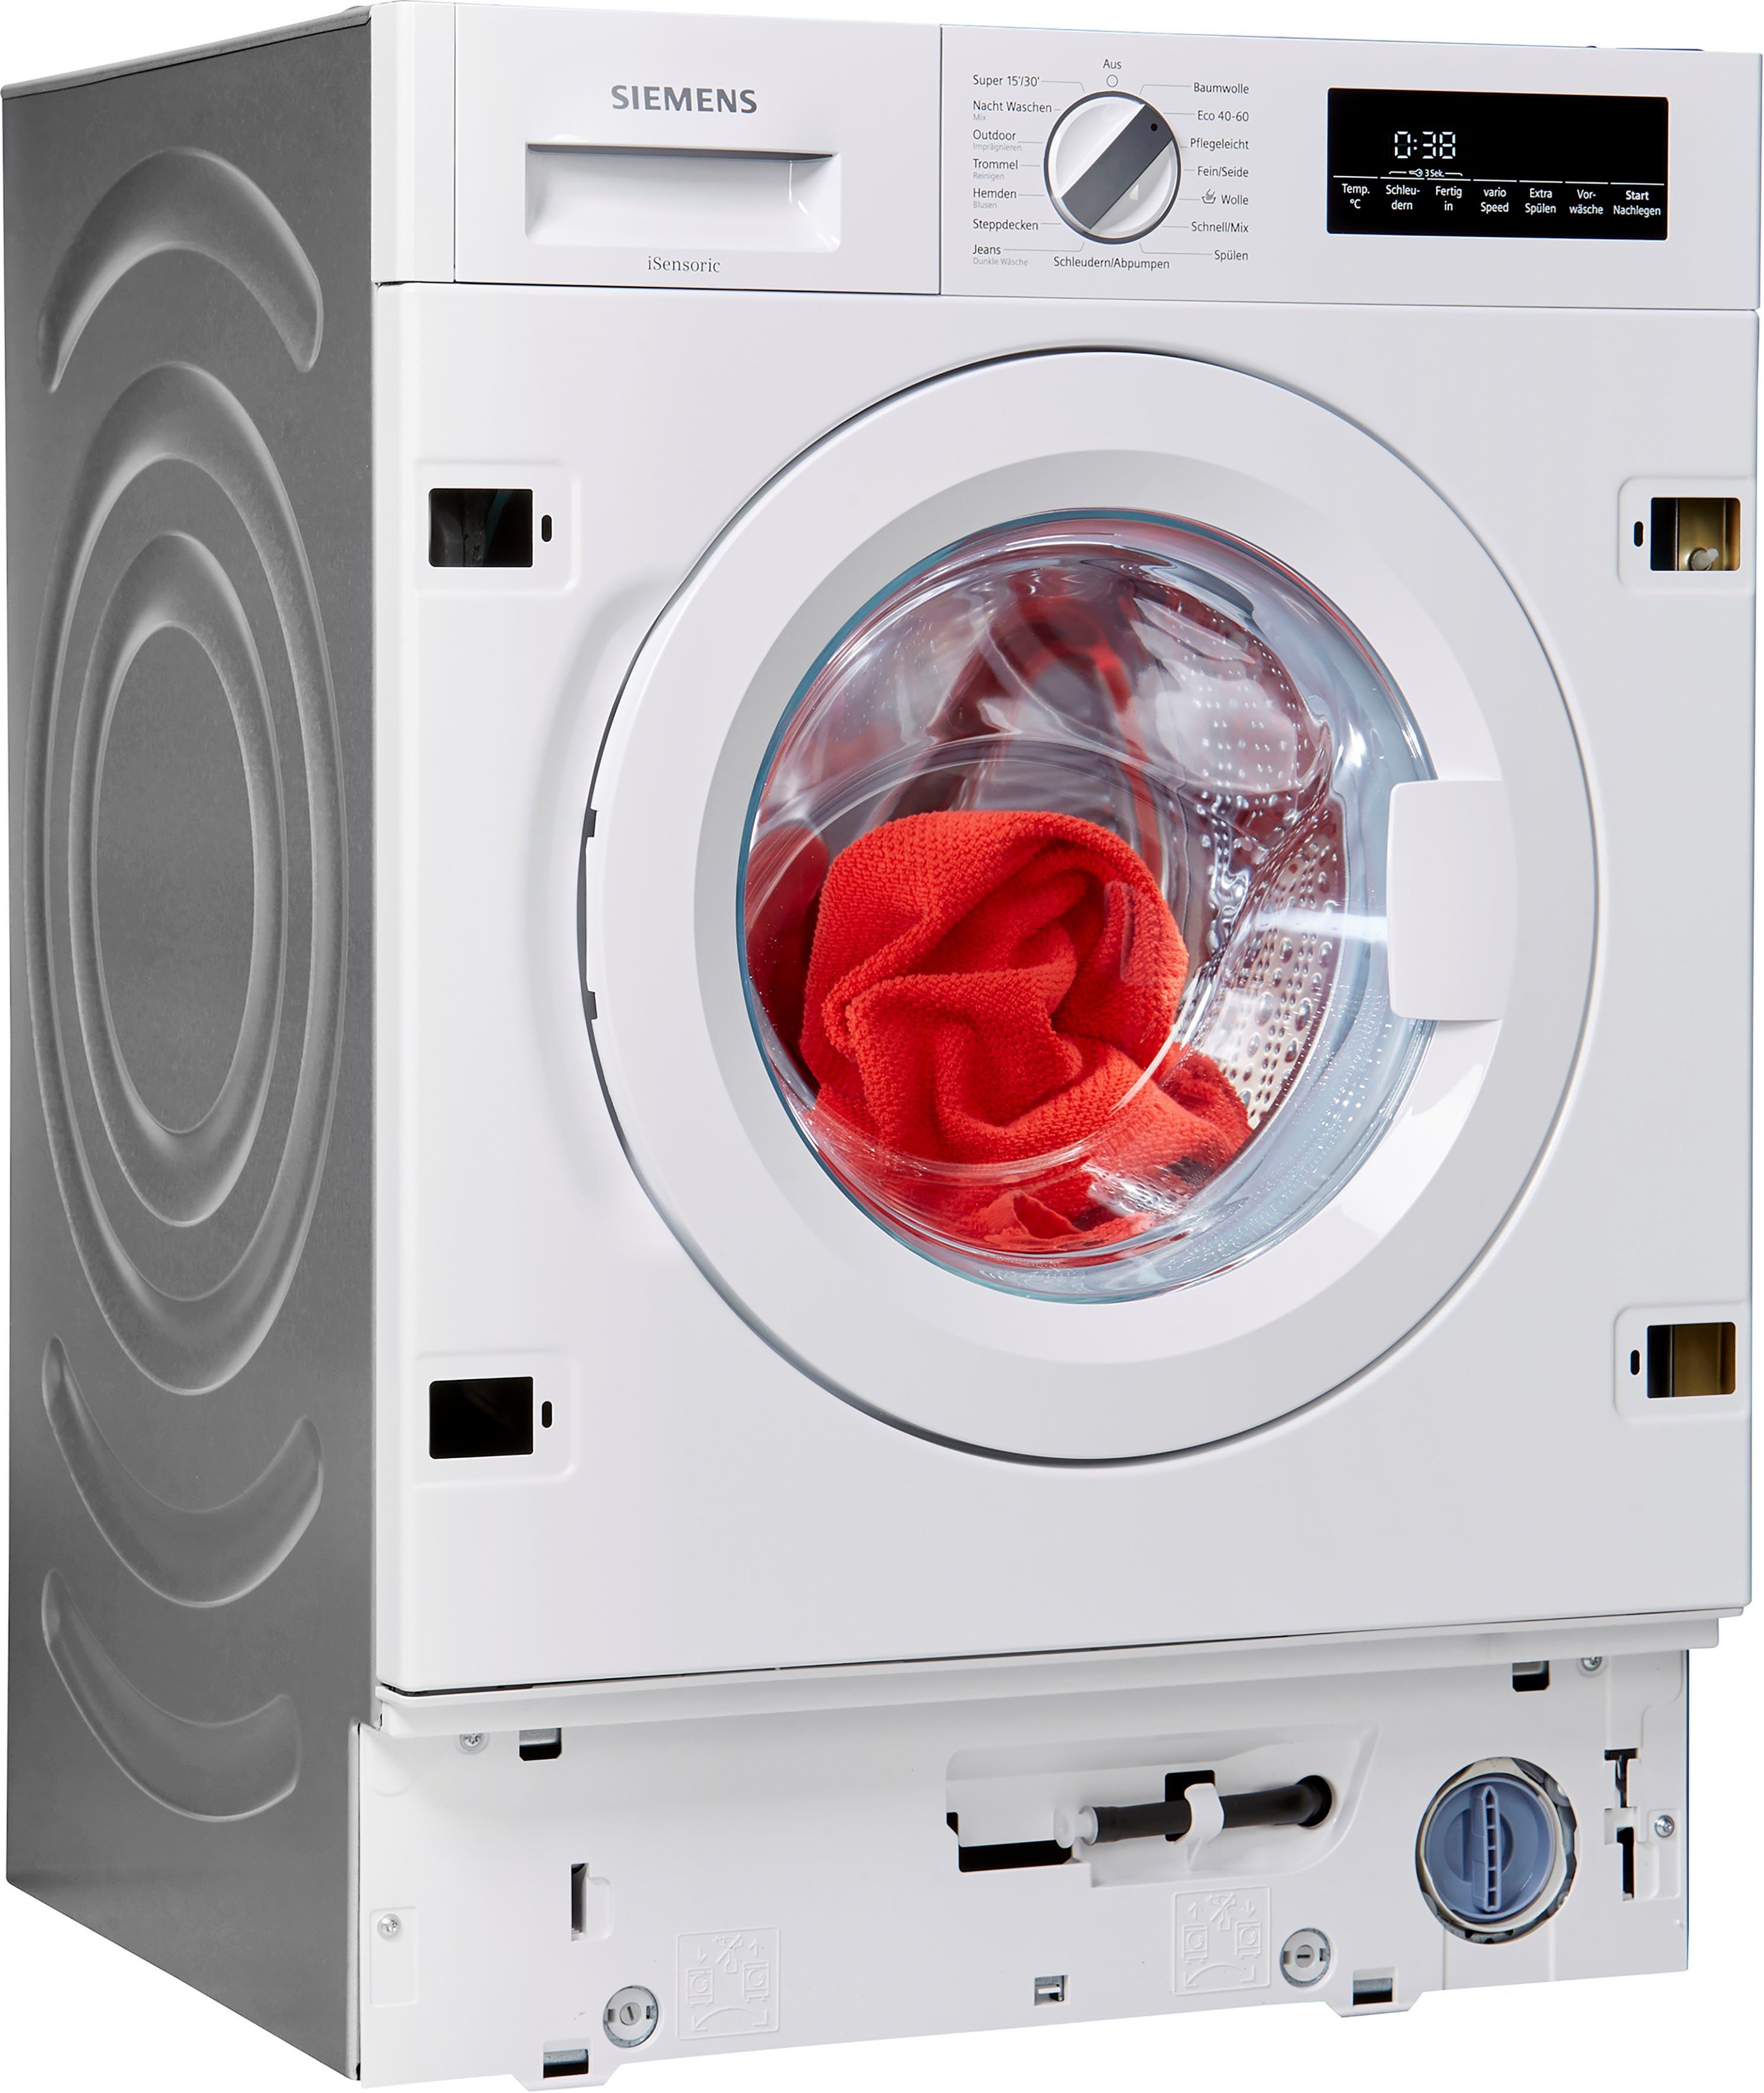 SIEMENS Einbauwaschmaschine iQ700 WI14W442, 8 kg, 1400 U/min online kaufen  | OTTO